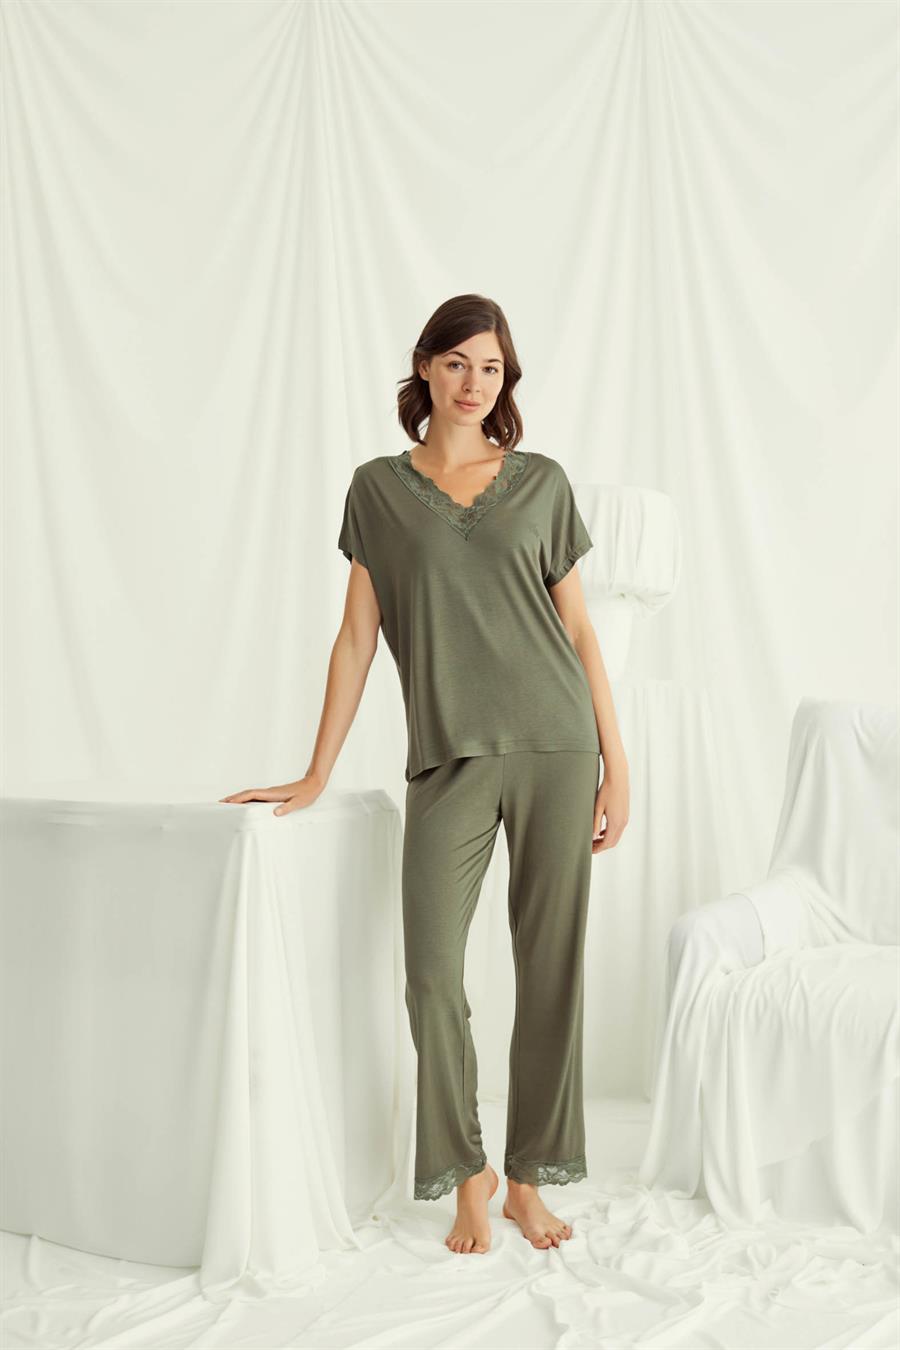 Kadın Pijama Takımı Modelleri ve Fiyatları - Monamise